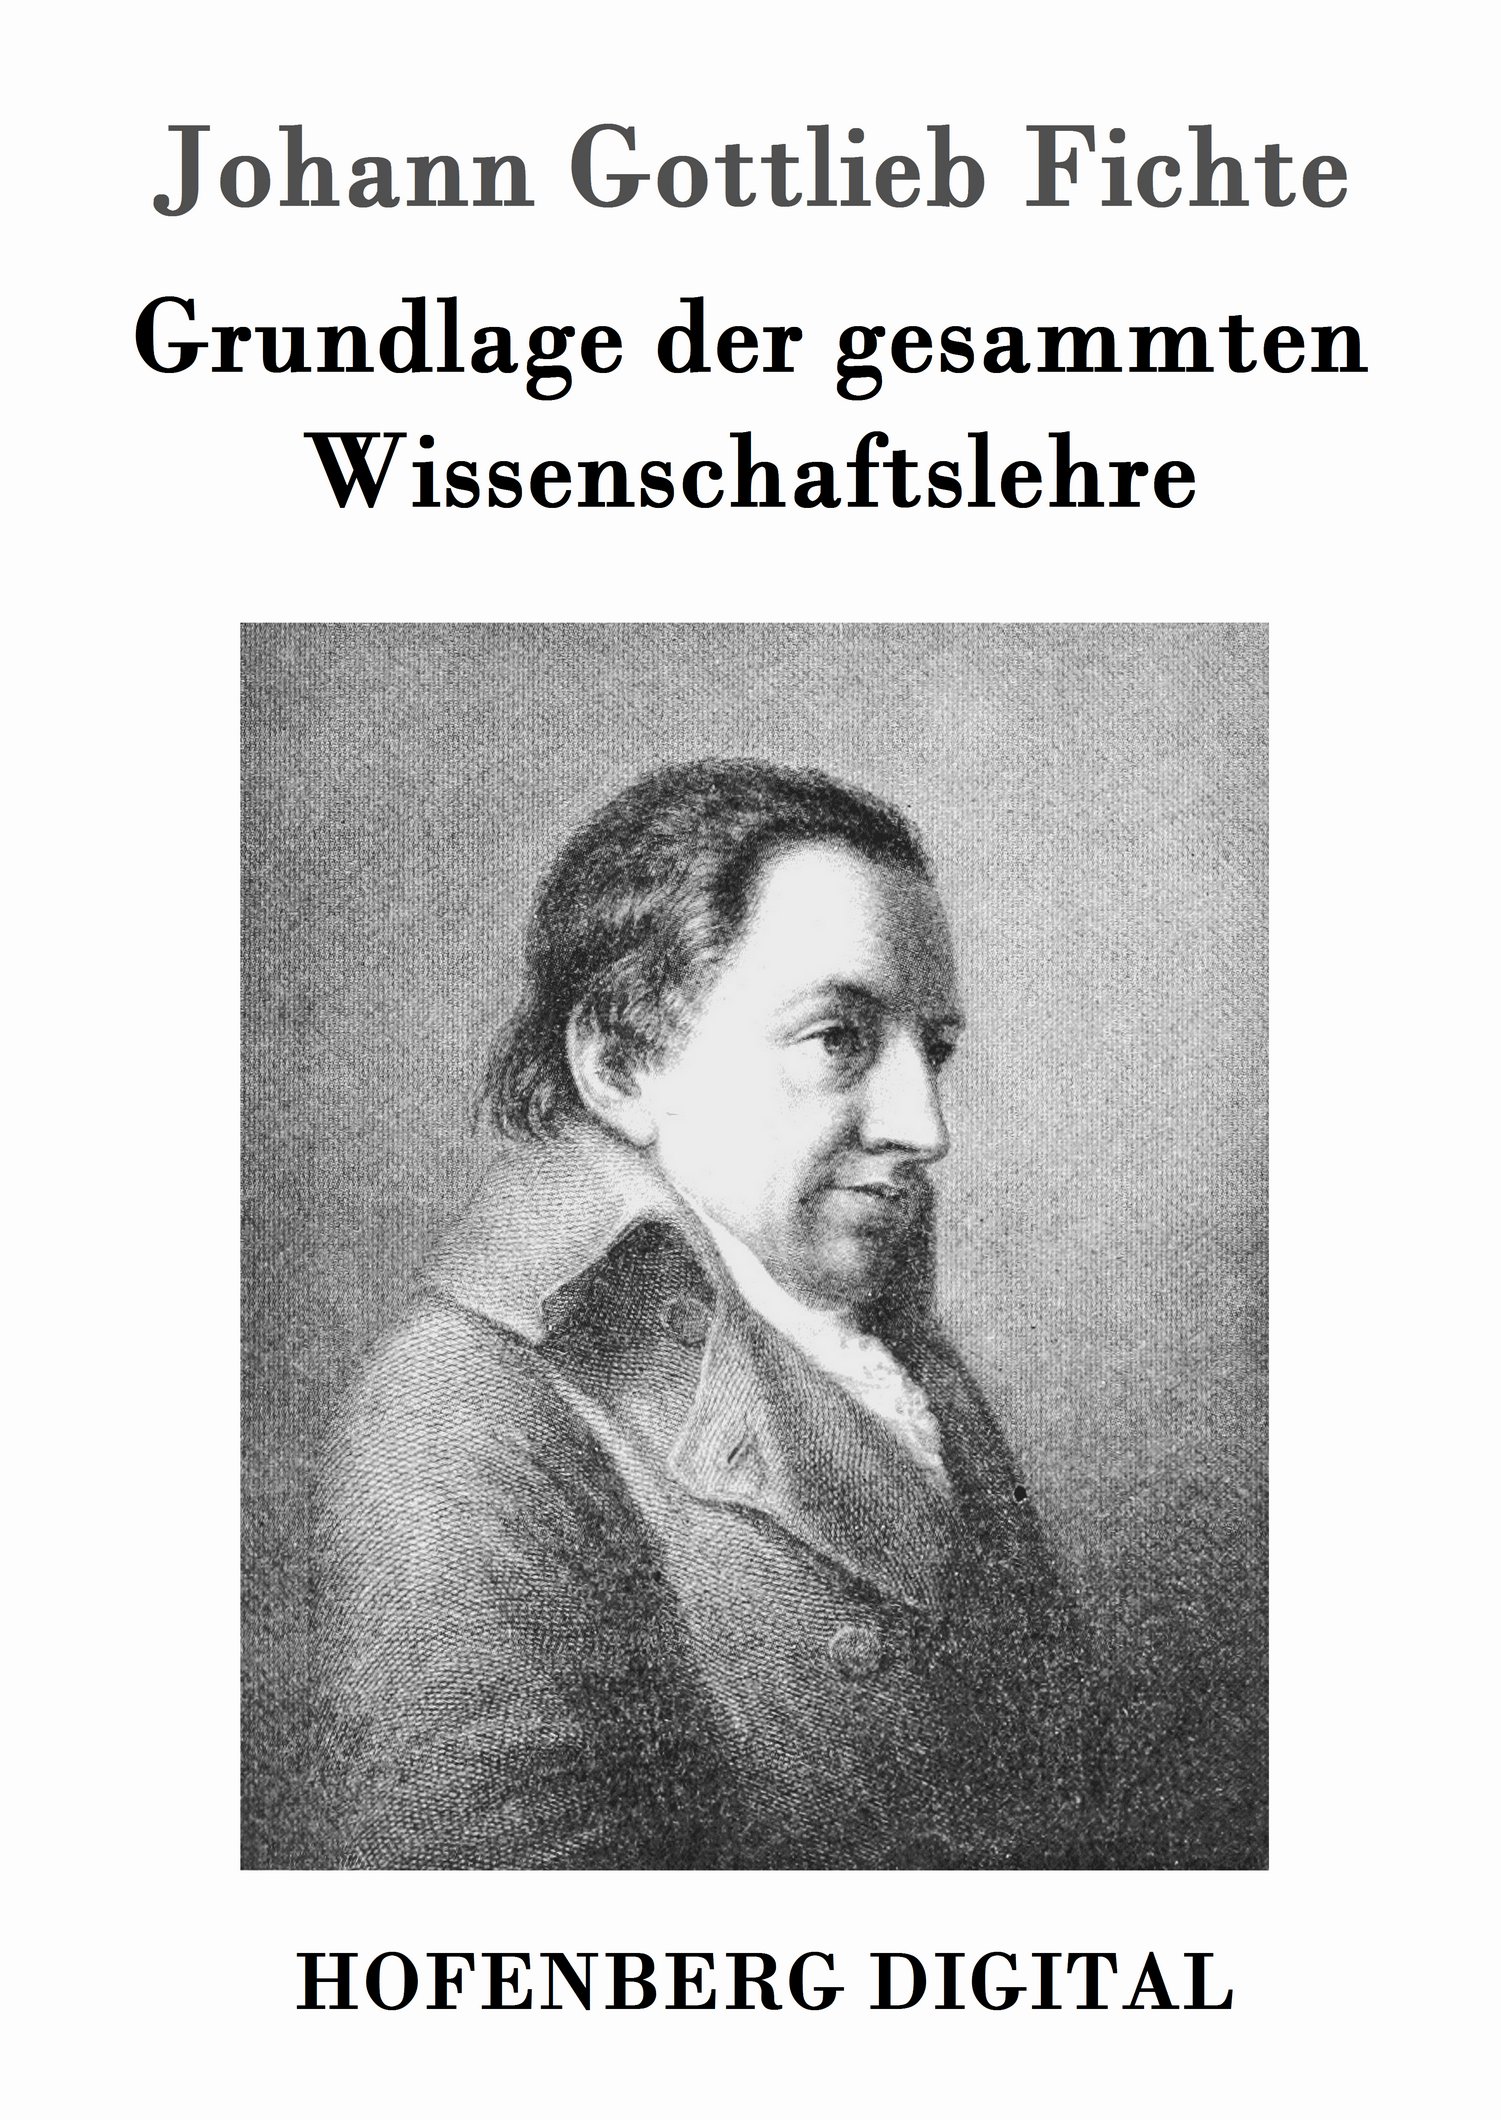 Johann Gottlieb Fichte: Grundlage der gesammten Wissenschaftslehre